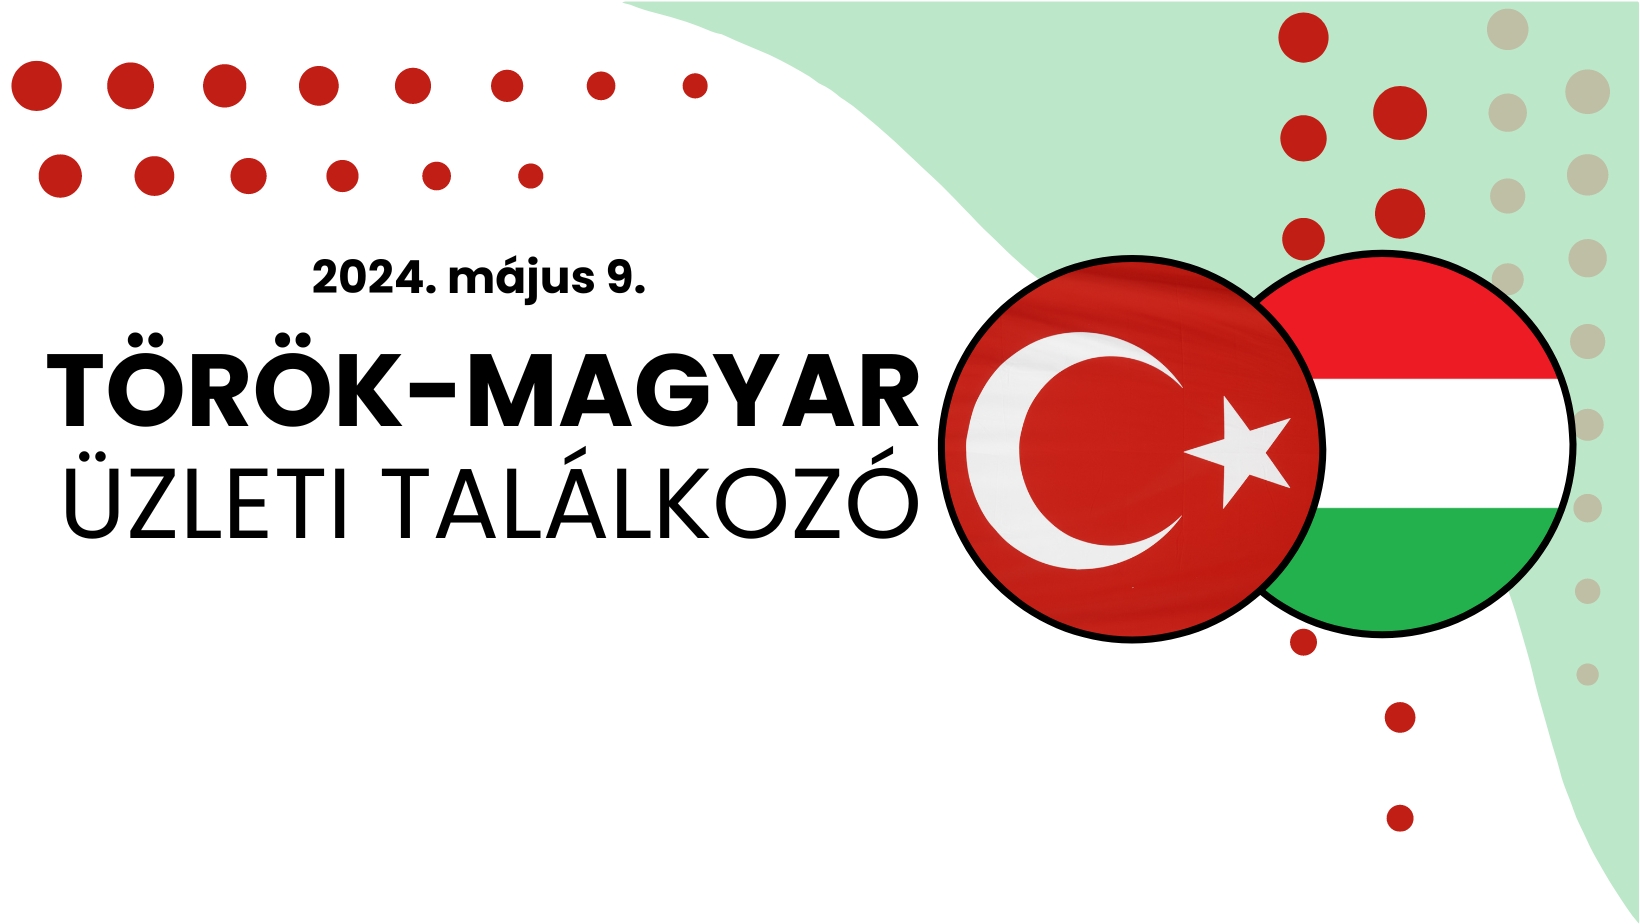 Török-Magyar Üzleti Találkozó - 2024.05.09.